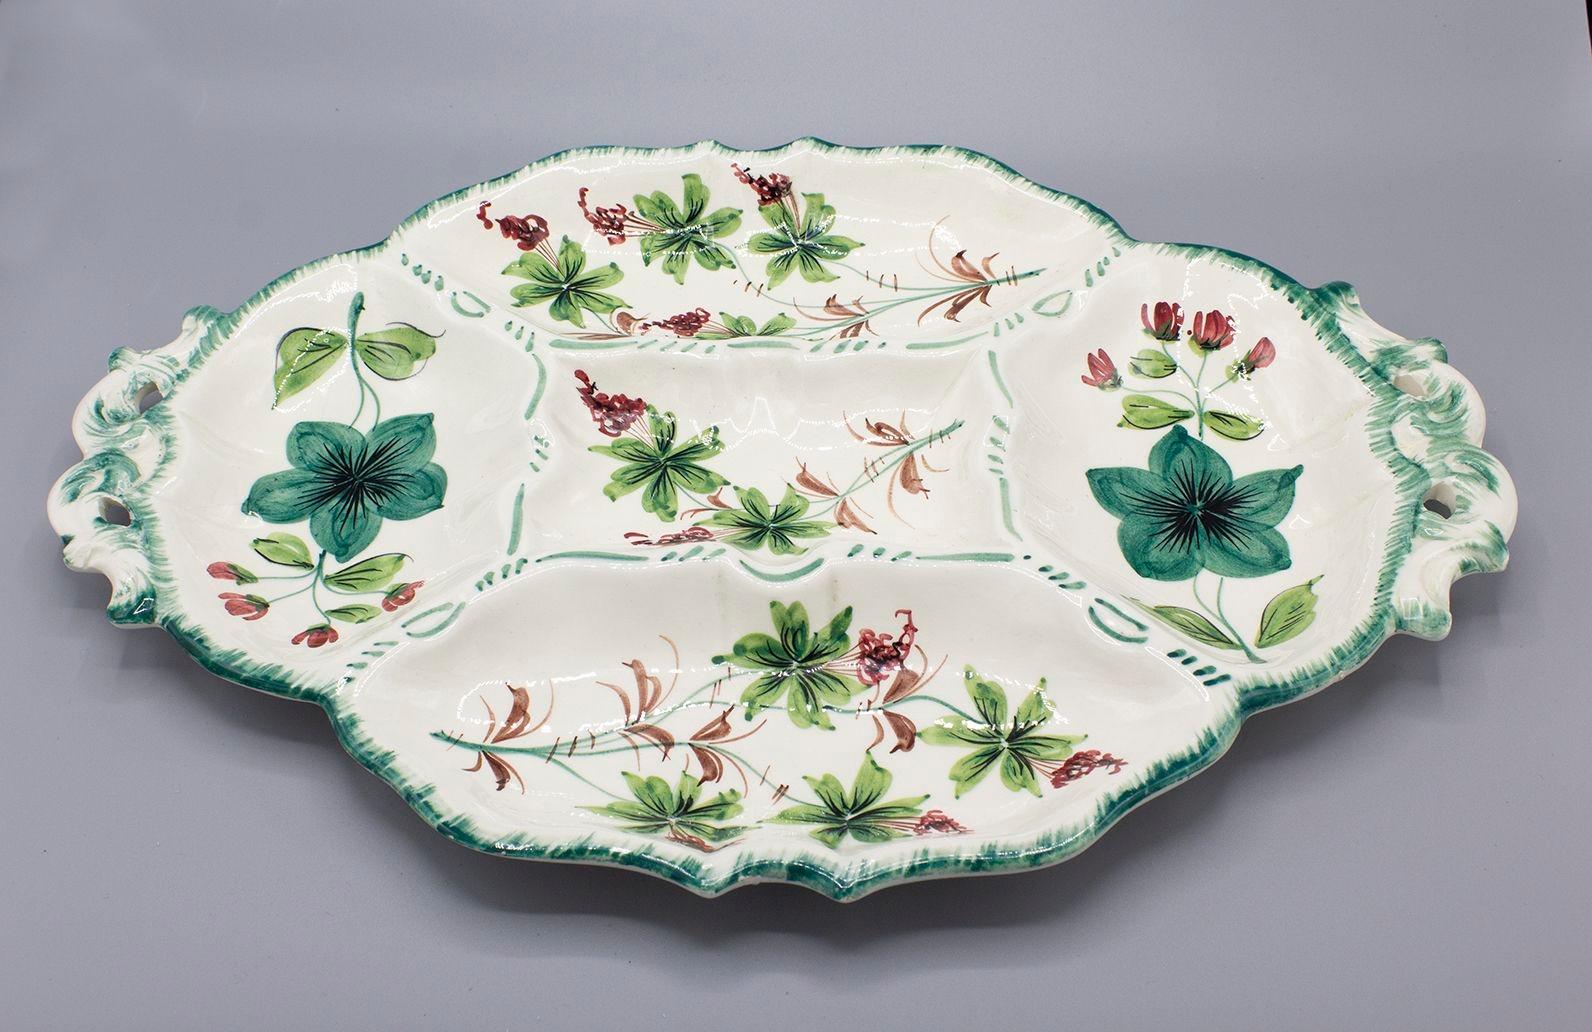 Italie, années 1960
Plat de service en céramique peint à la main avec des motifs floraux. Il comporte cinq compartiments de service divisés et est estampillé sur la base 